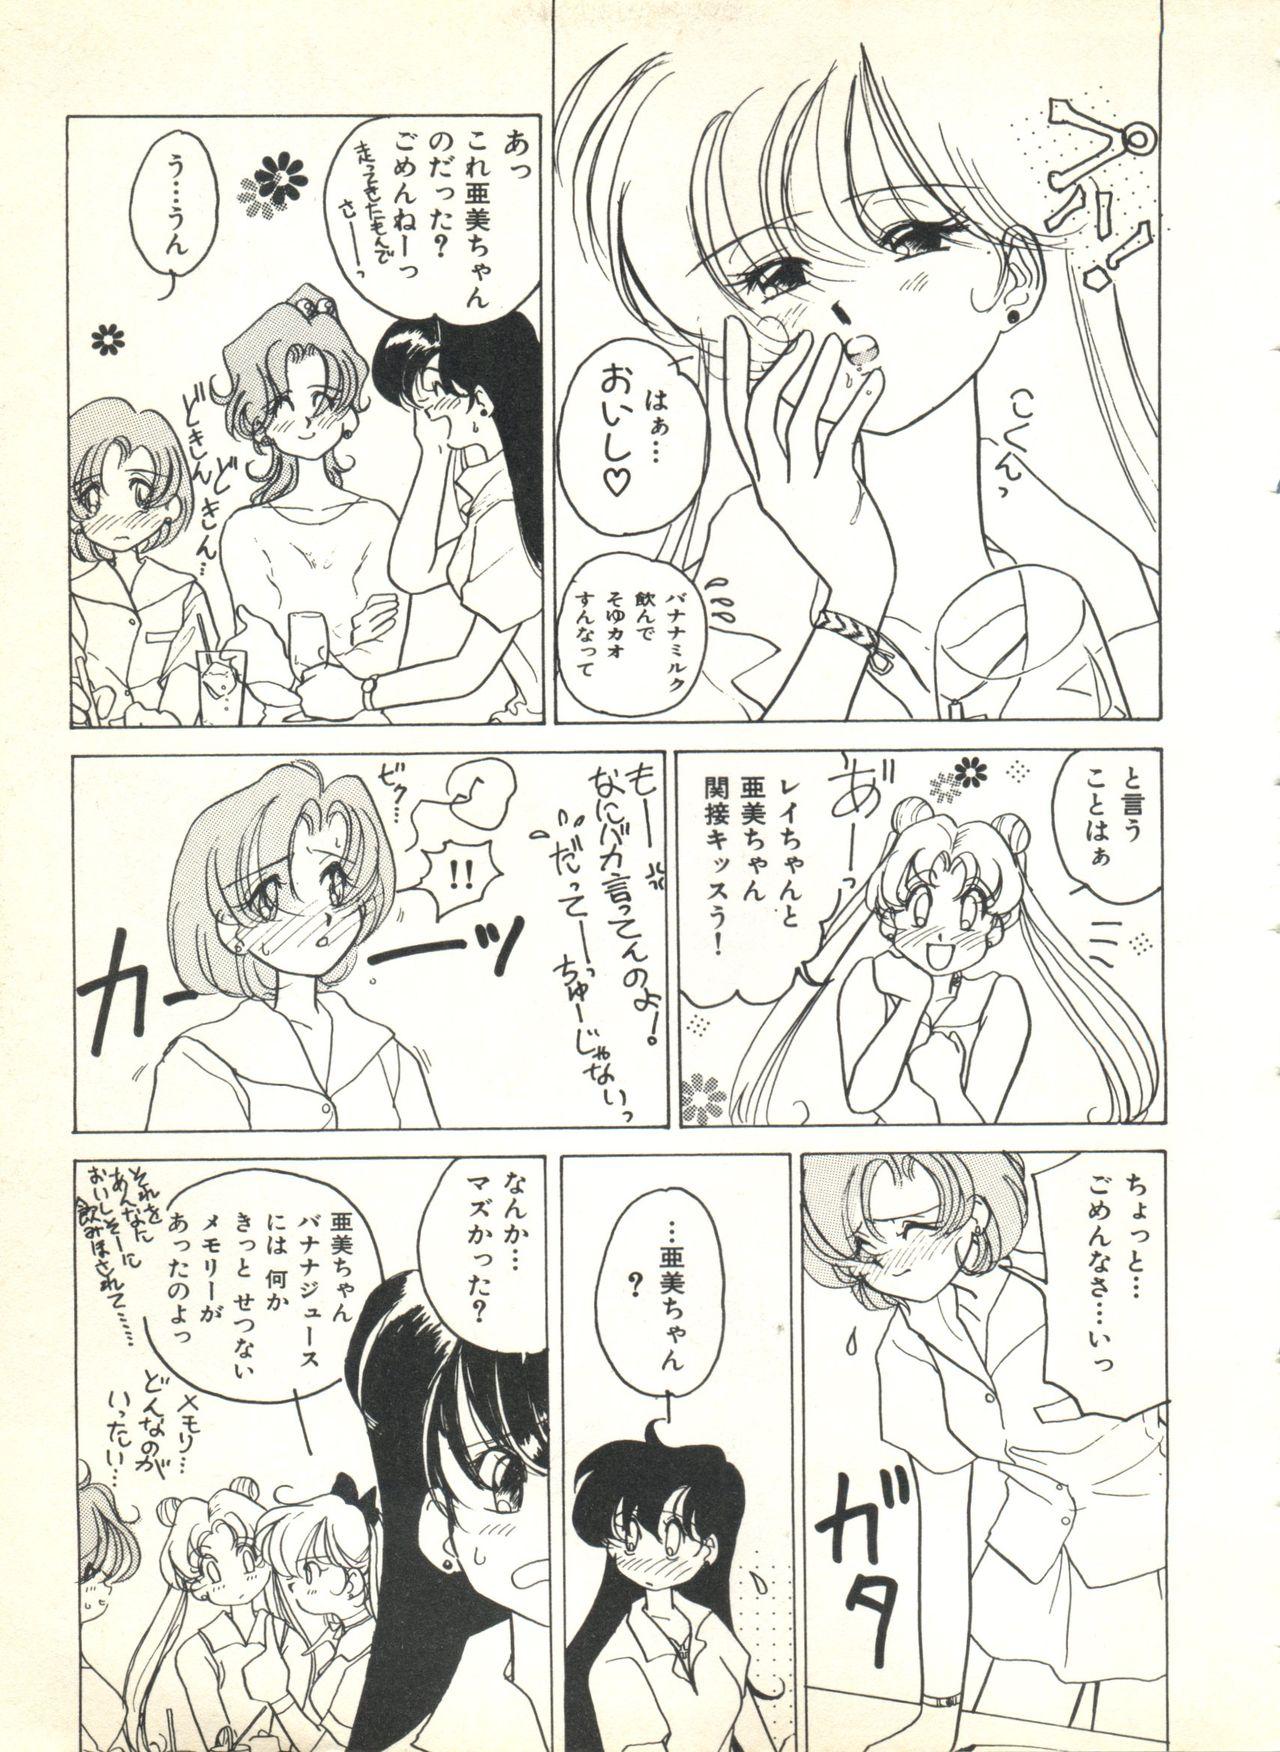 Tinder Colorful Moon 2 - Sailor moon Tugjob - Page 11